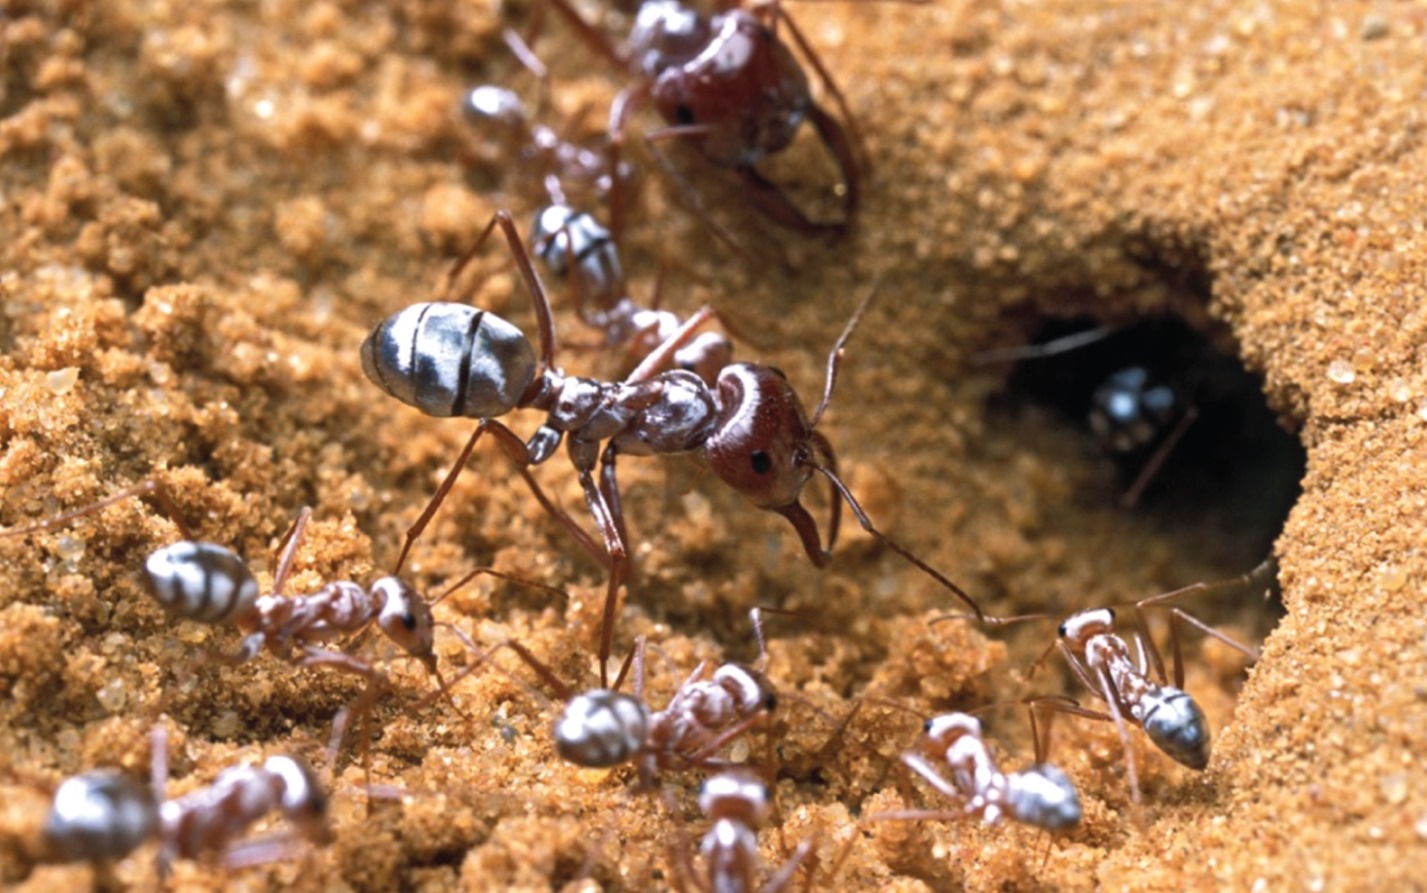 Comment les poils des fourmis argentées sahariennes les préservent de l’extrême chaleur du désert ?